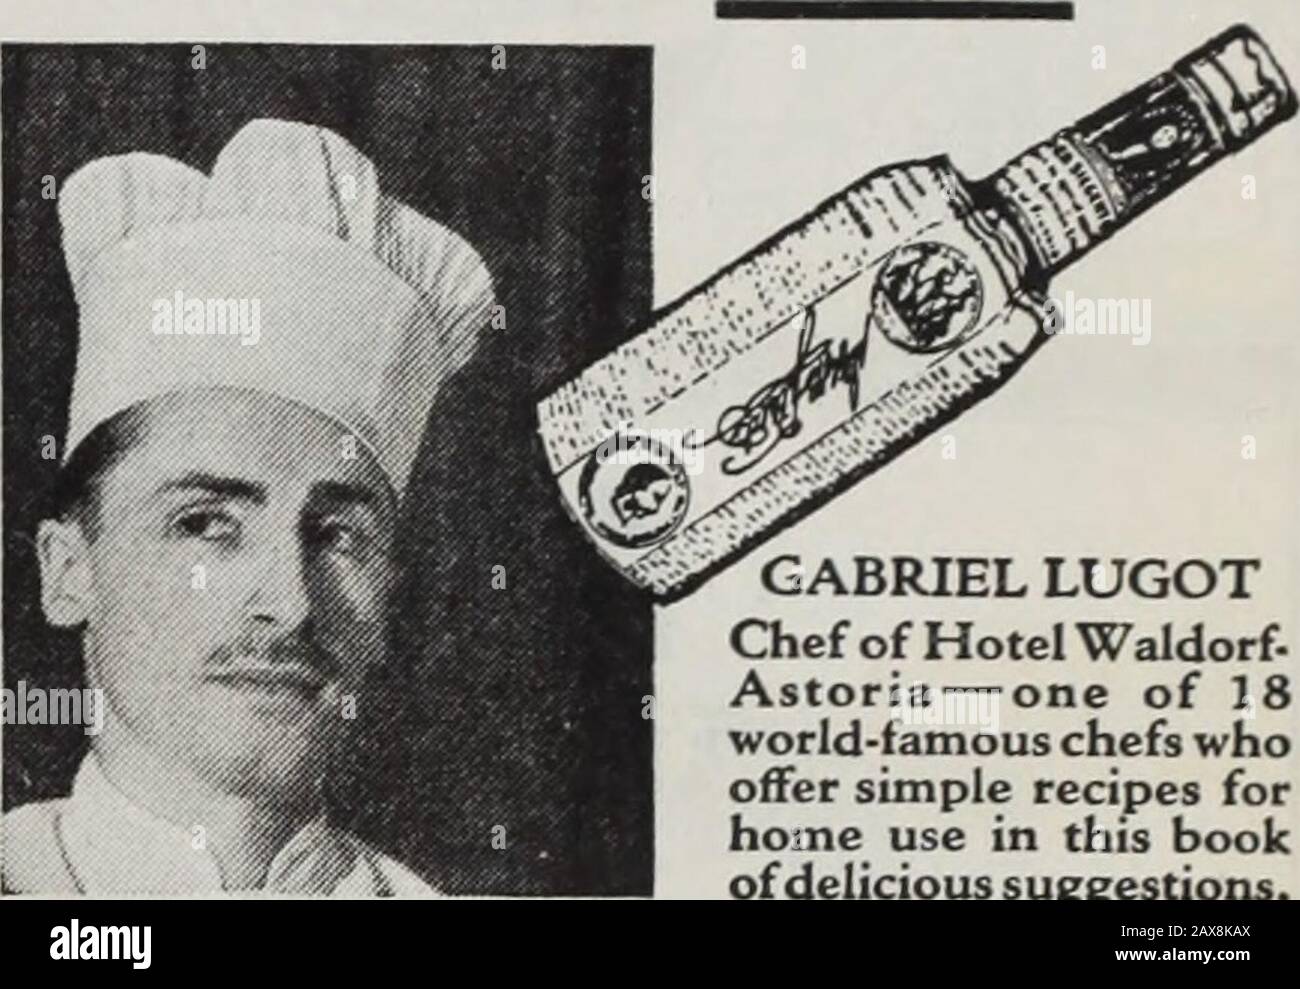 Puesta De Sol . DELICIOSAS RECETAS GRATIS. Gabriel LUGOTChef del Hotel   — uno de los chefs más famosos del mundo 18 whooffer recetas  sencillas para su uso en este libro de